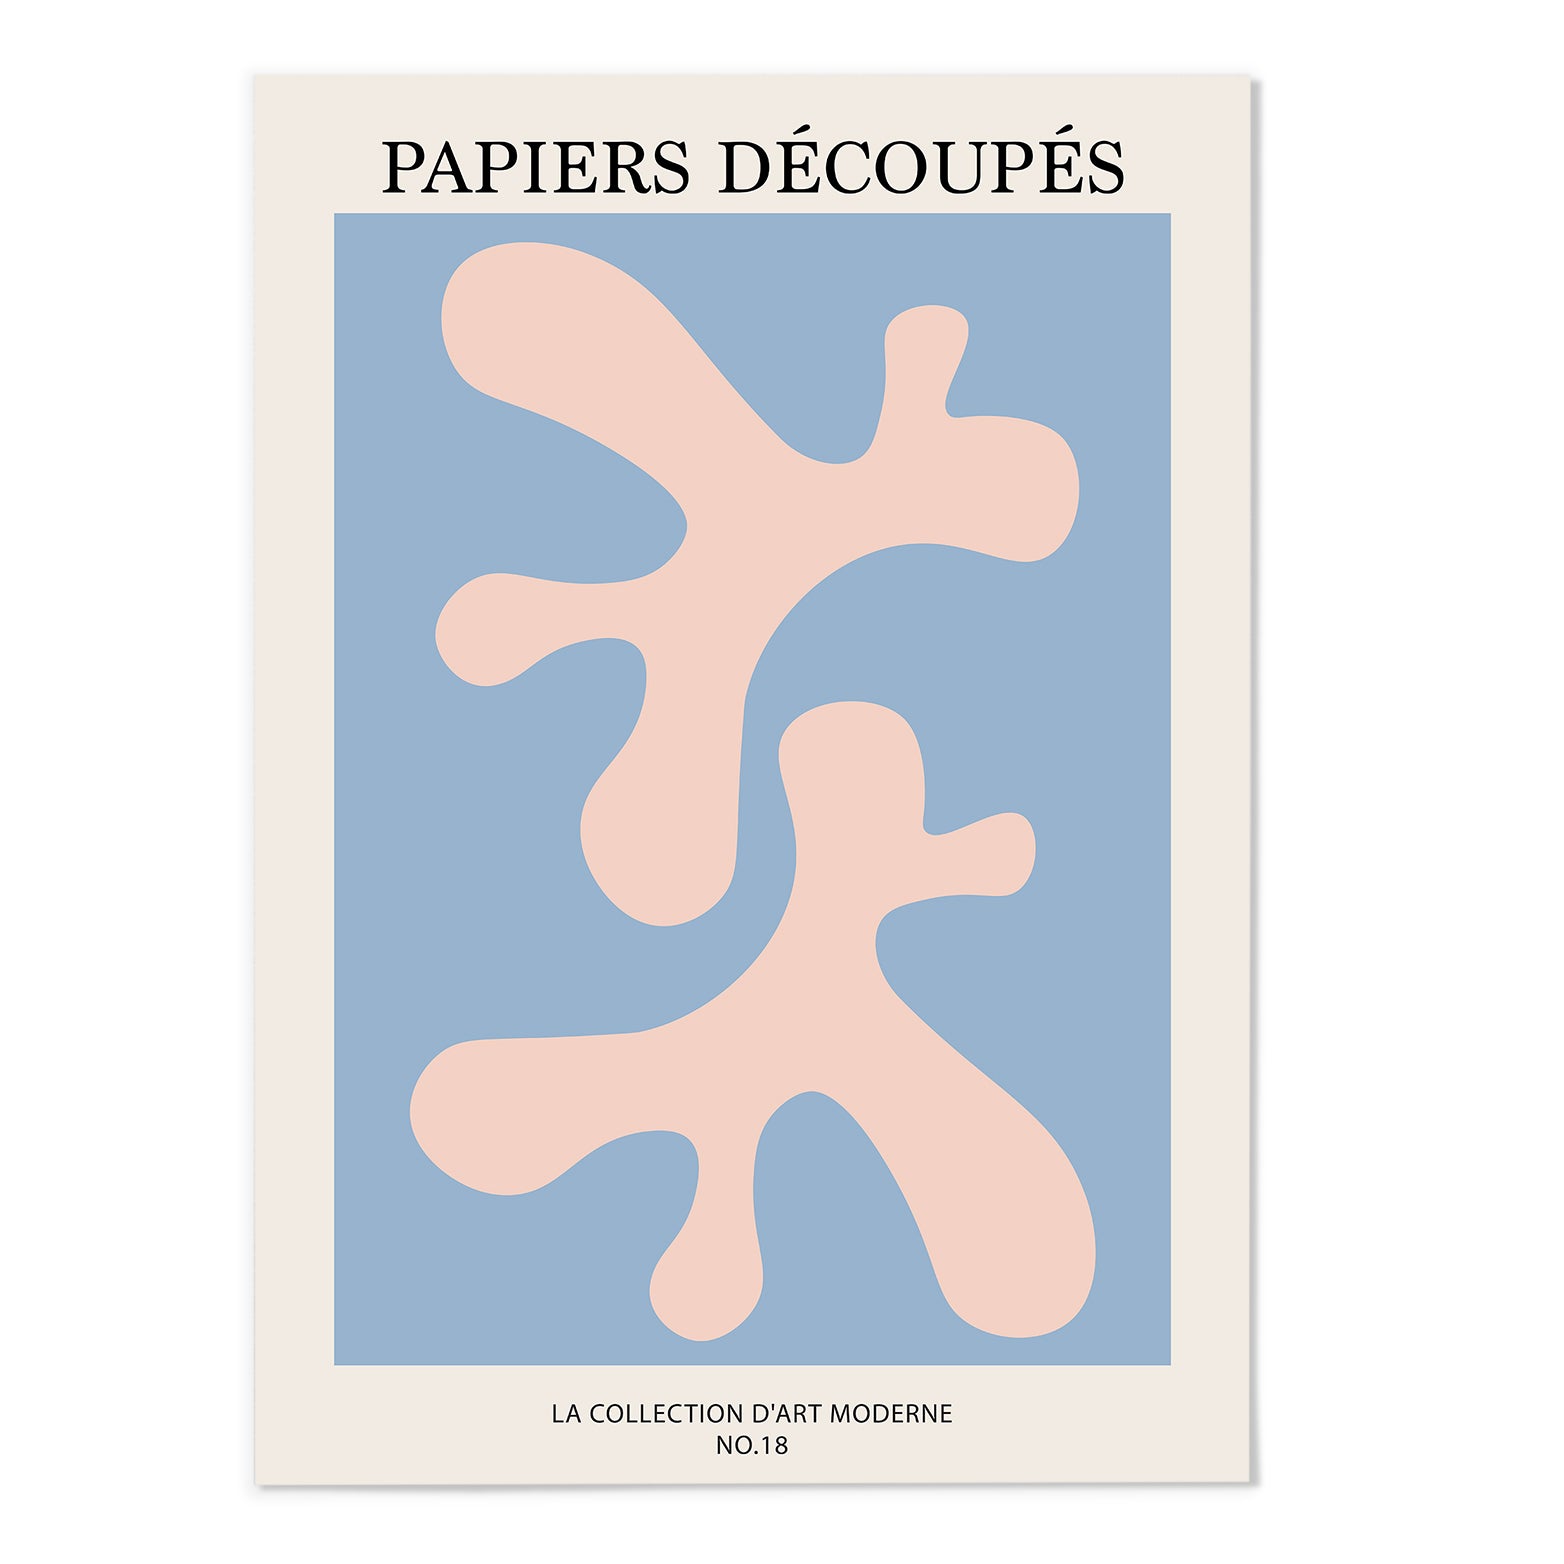 PAPIERS DÉCOUPÉS V Art Print